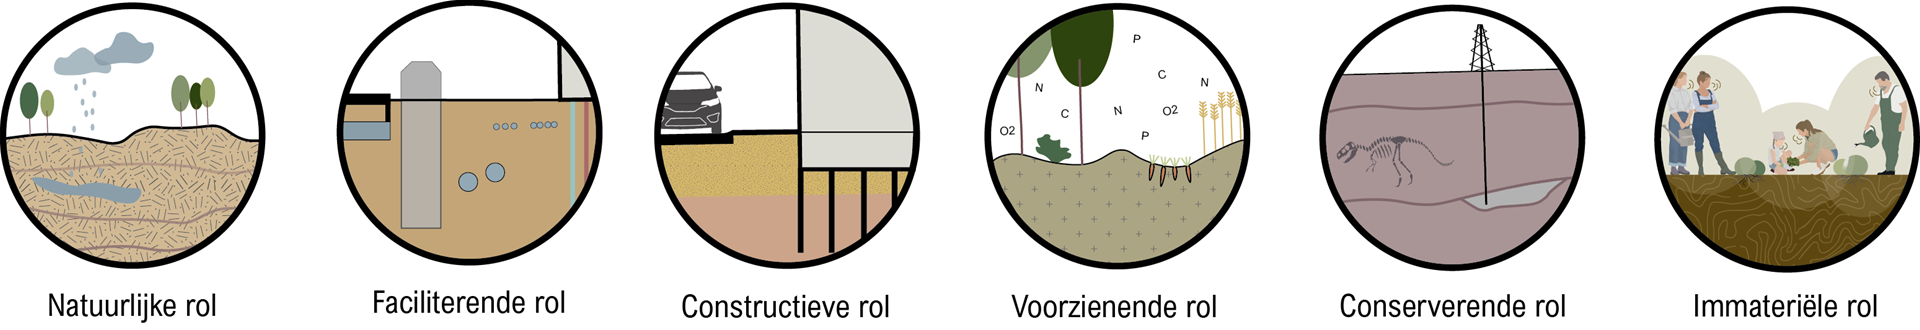 Rollen van de bodem, Jolinde Doornbosch